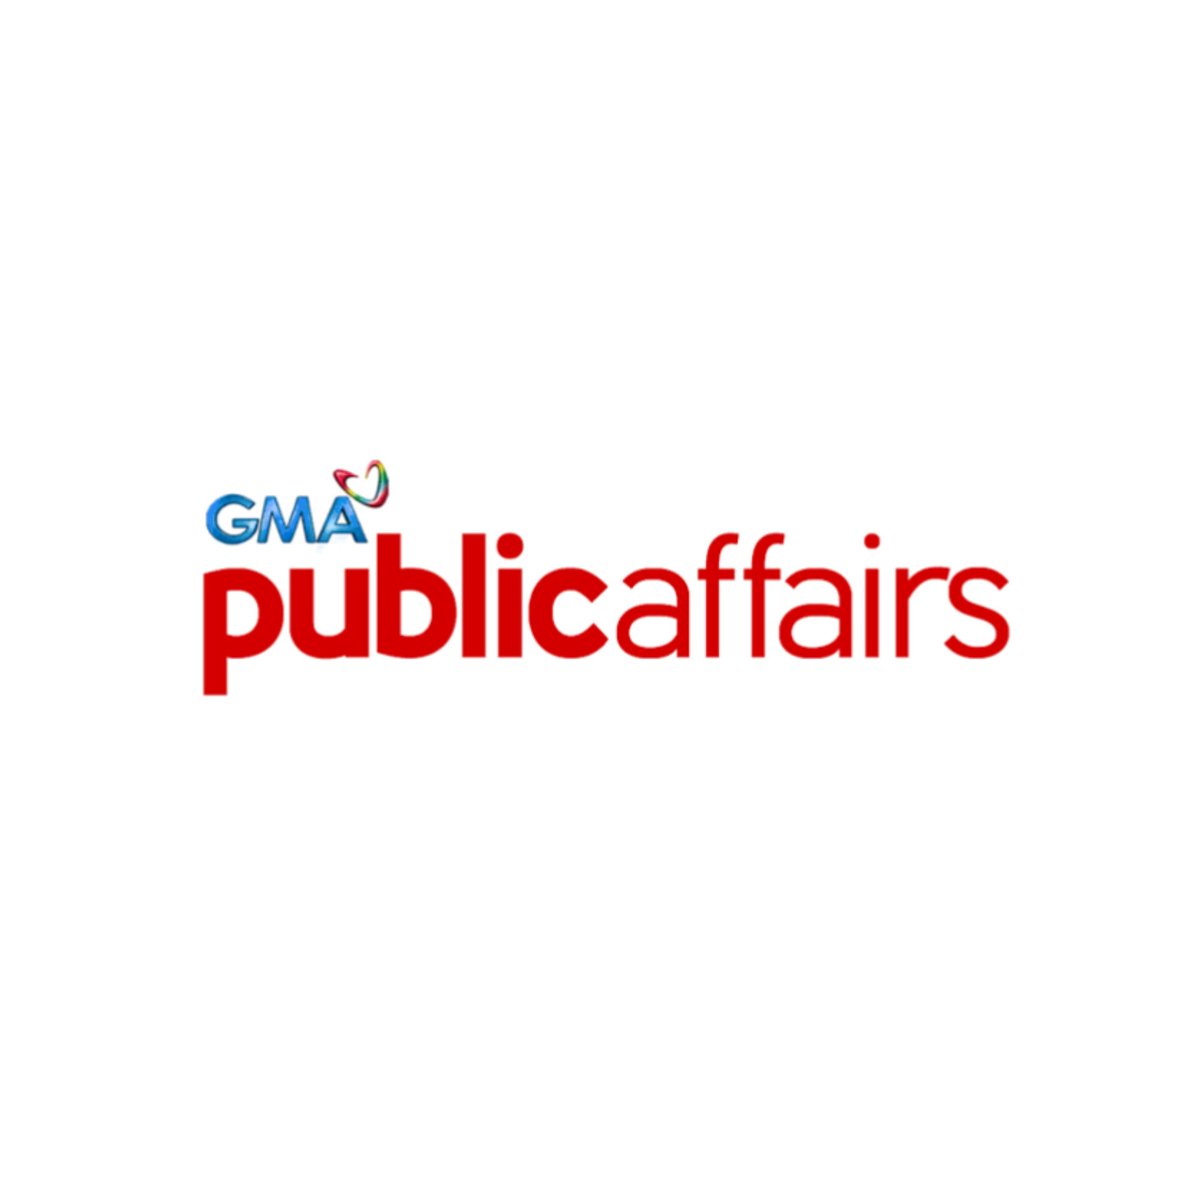 GMA Public Affairs at Movie Queen Bea Alonzo, may pinaghahandaang malaking proyekto na inaasahang matutuloy ngayong taon!